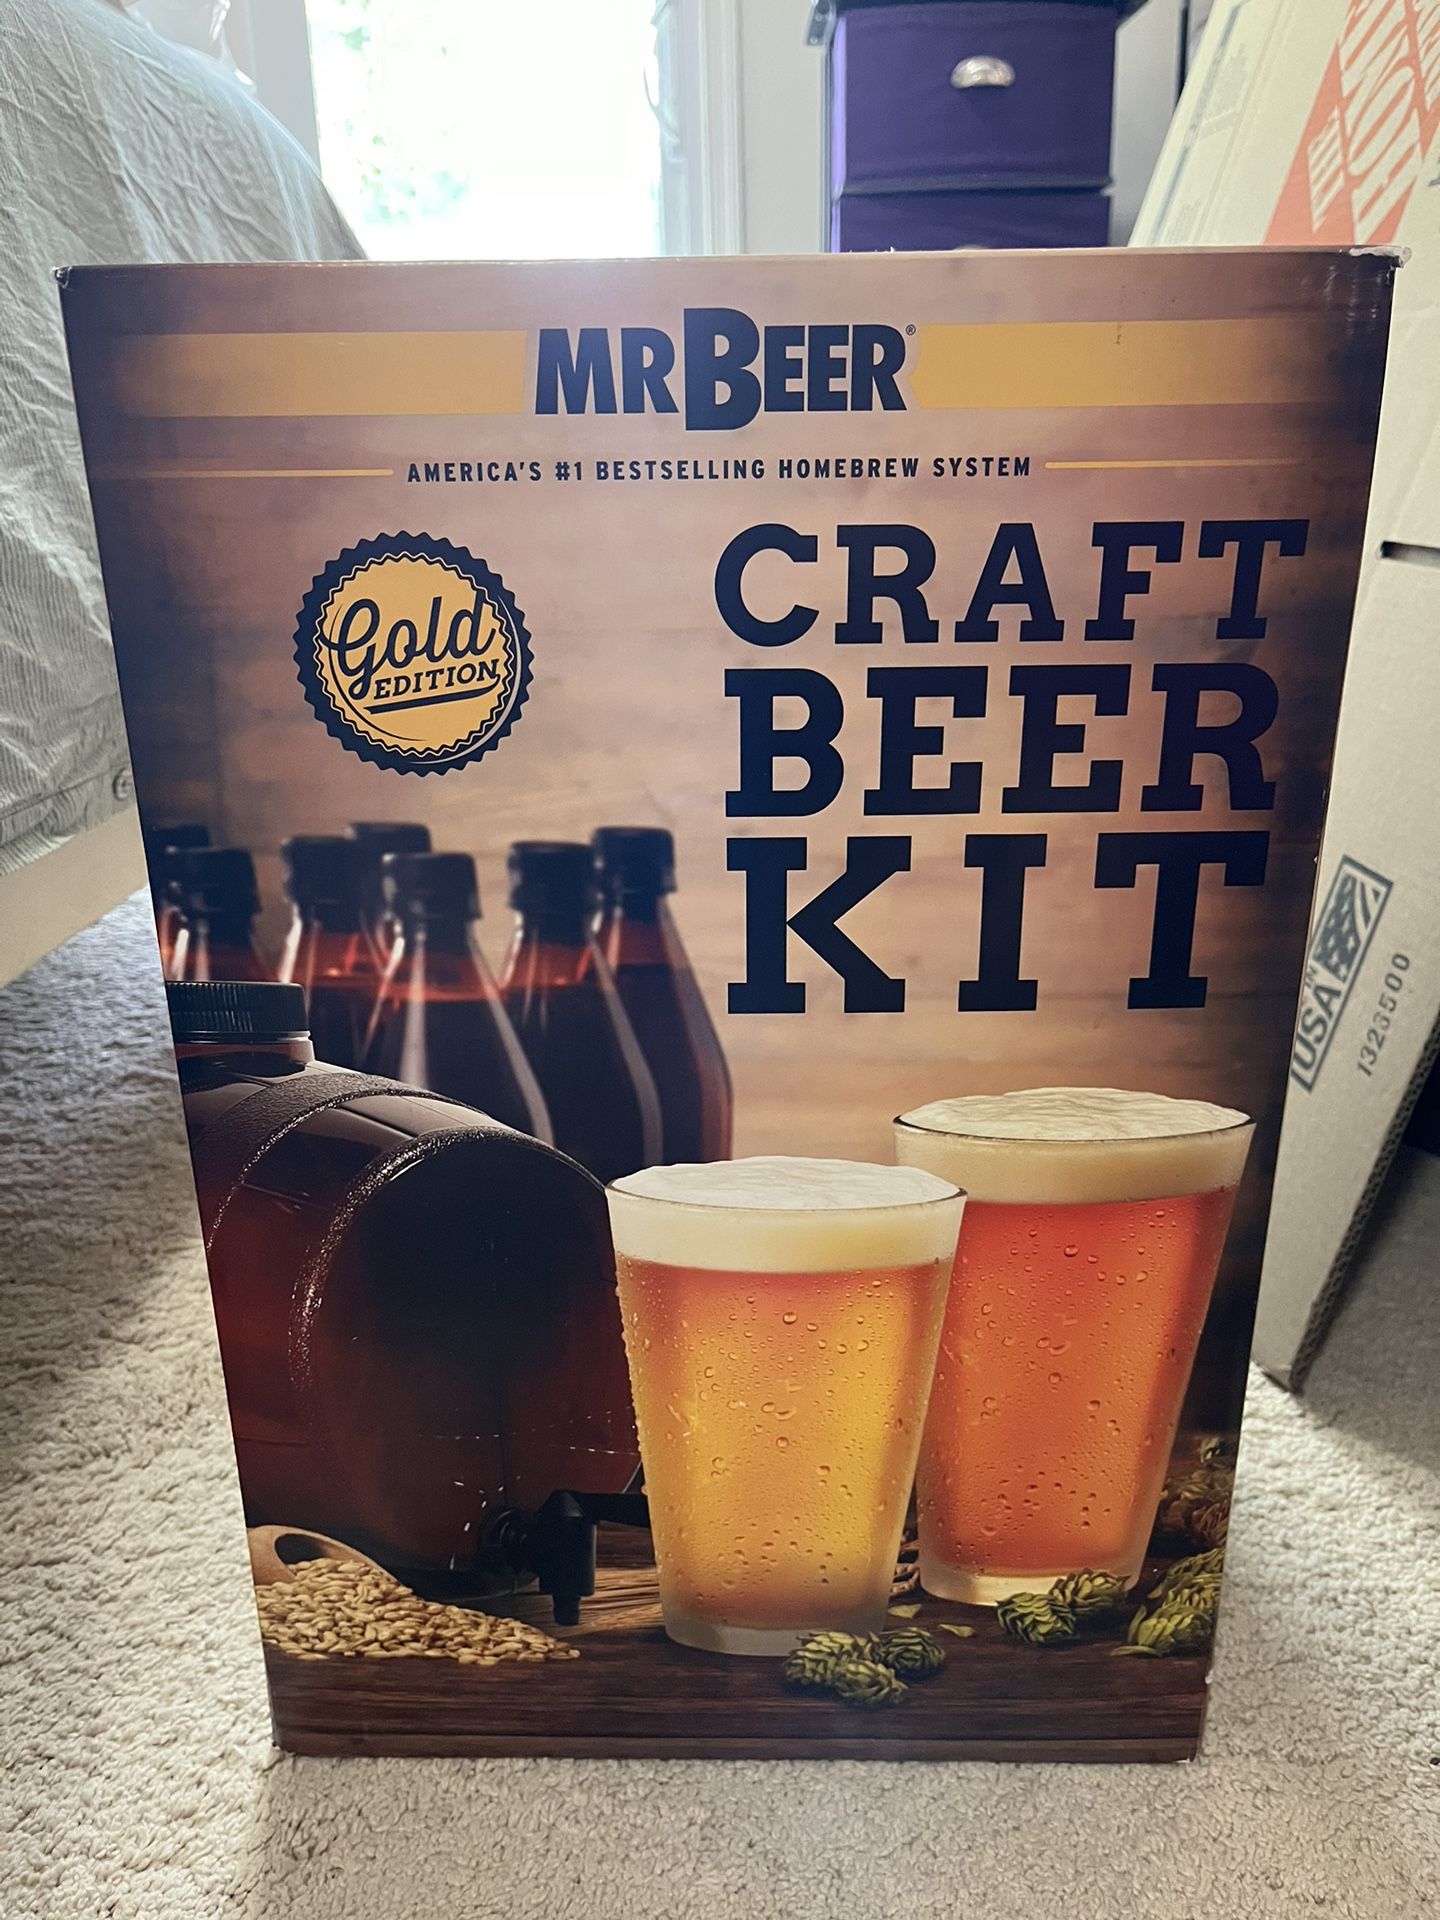 $20! Mr. Beer Craft Beer Home Brewing Kit 